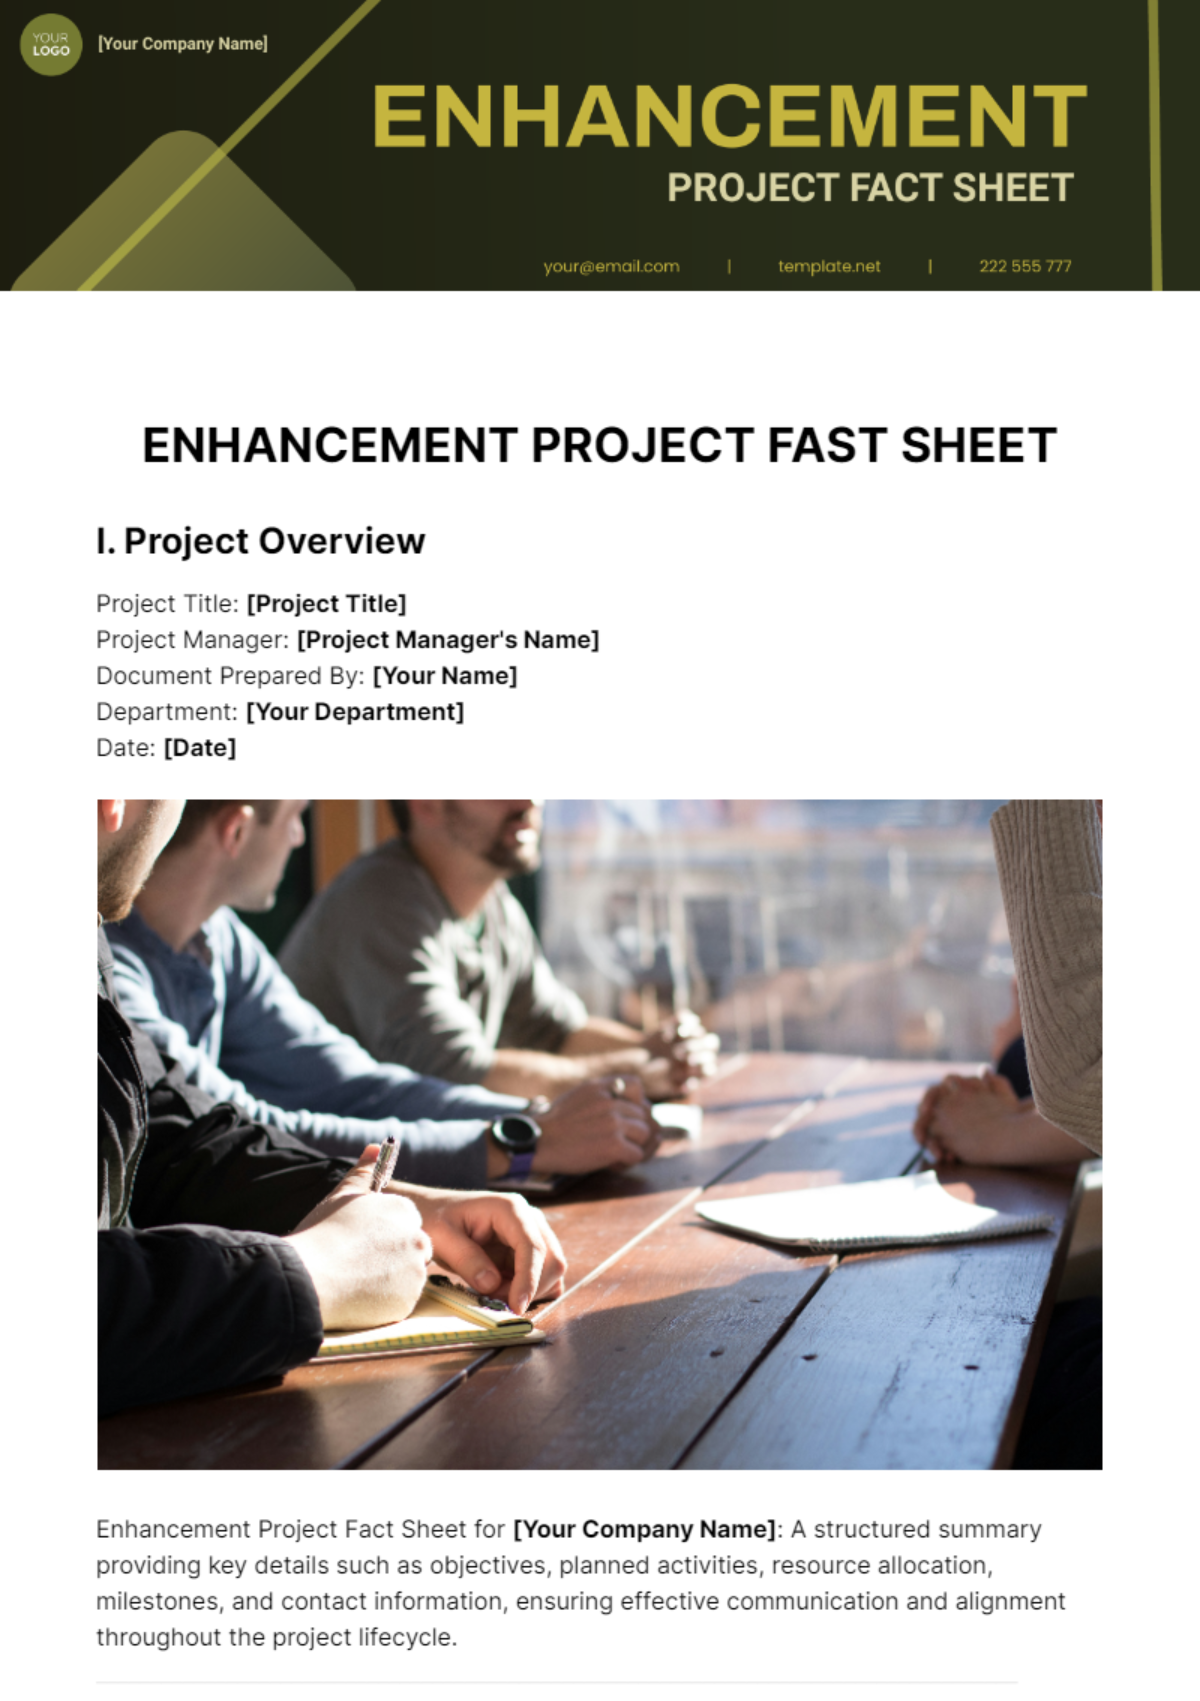 Enhancement Project Fact Sheet Template